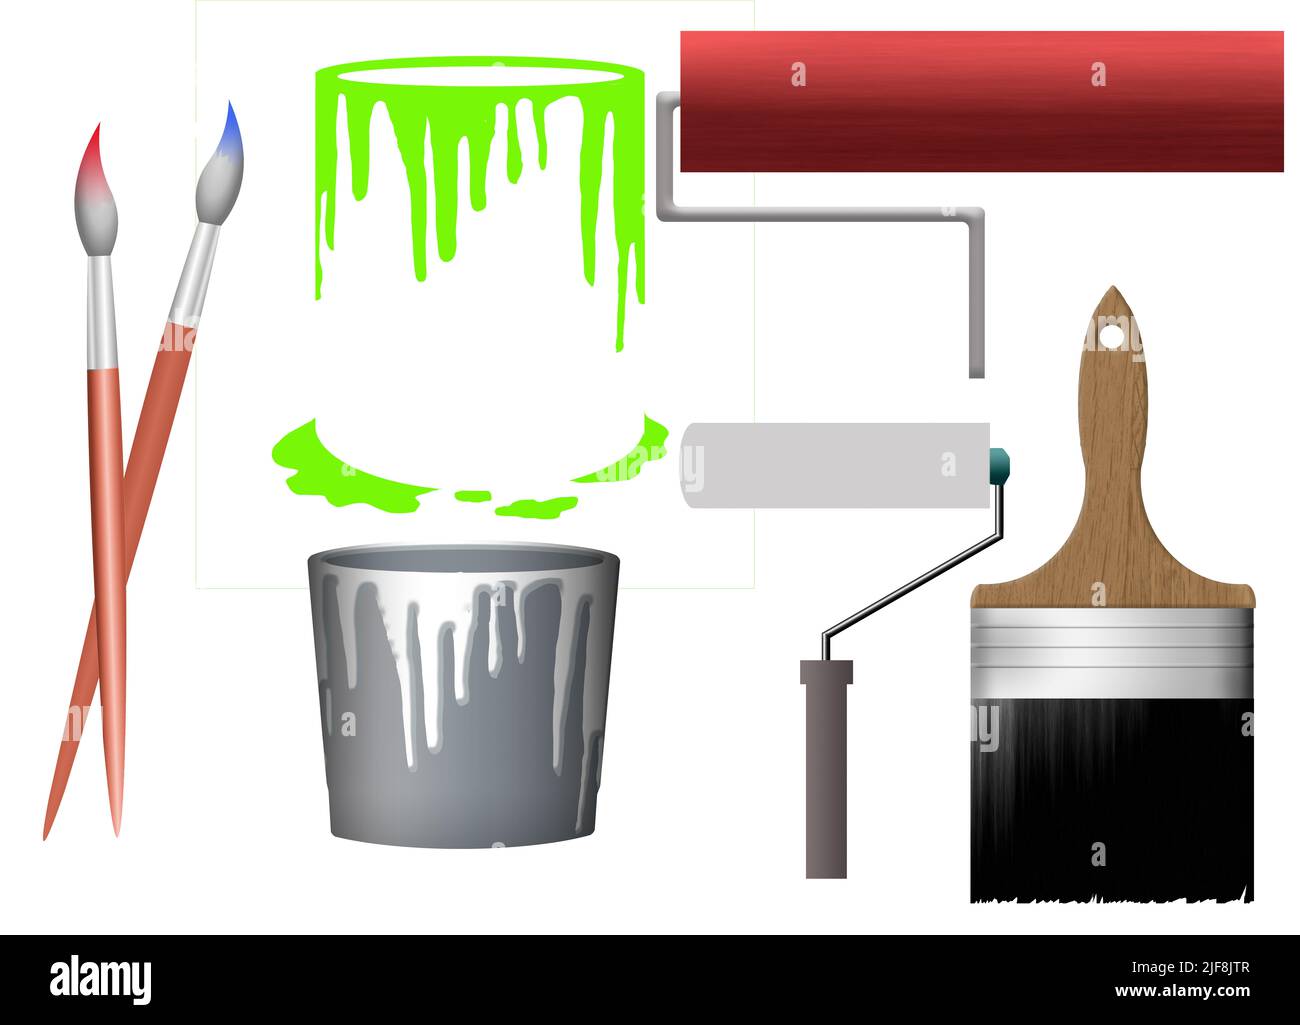 El cubo de pintura, los cepillos y los rodillos de pintura se ven en las ilustraciones 3-d para ser utilizados como recursos gráficos. Foto de stock